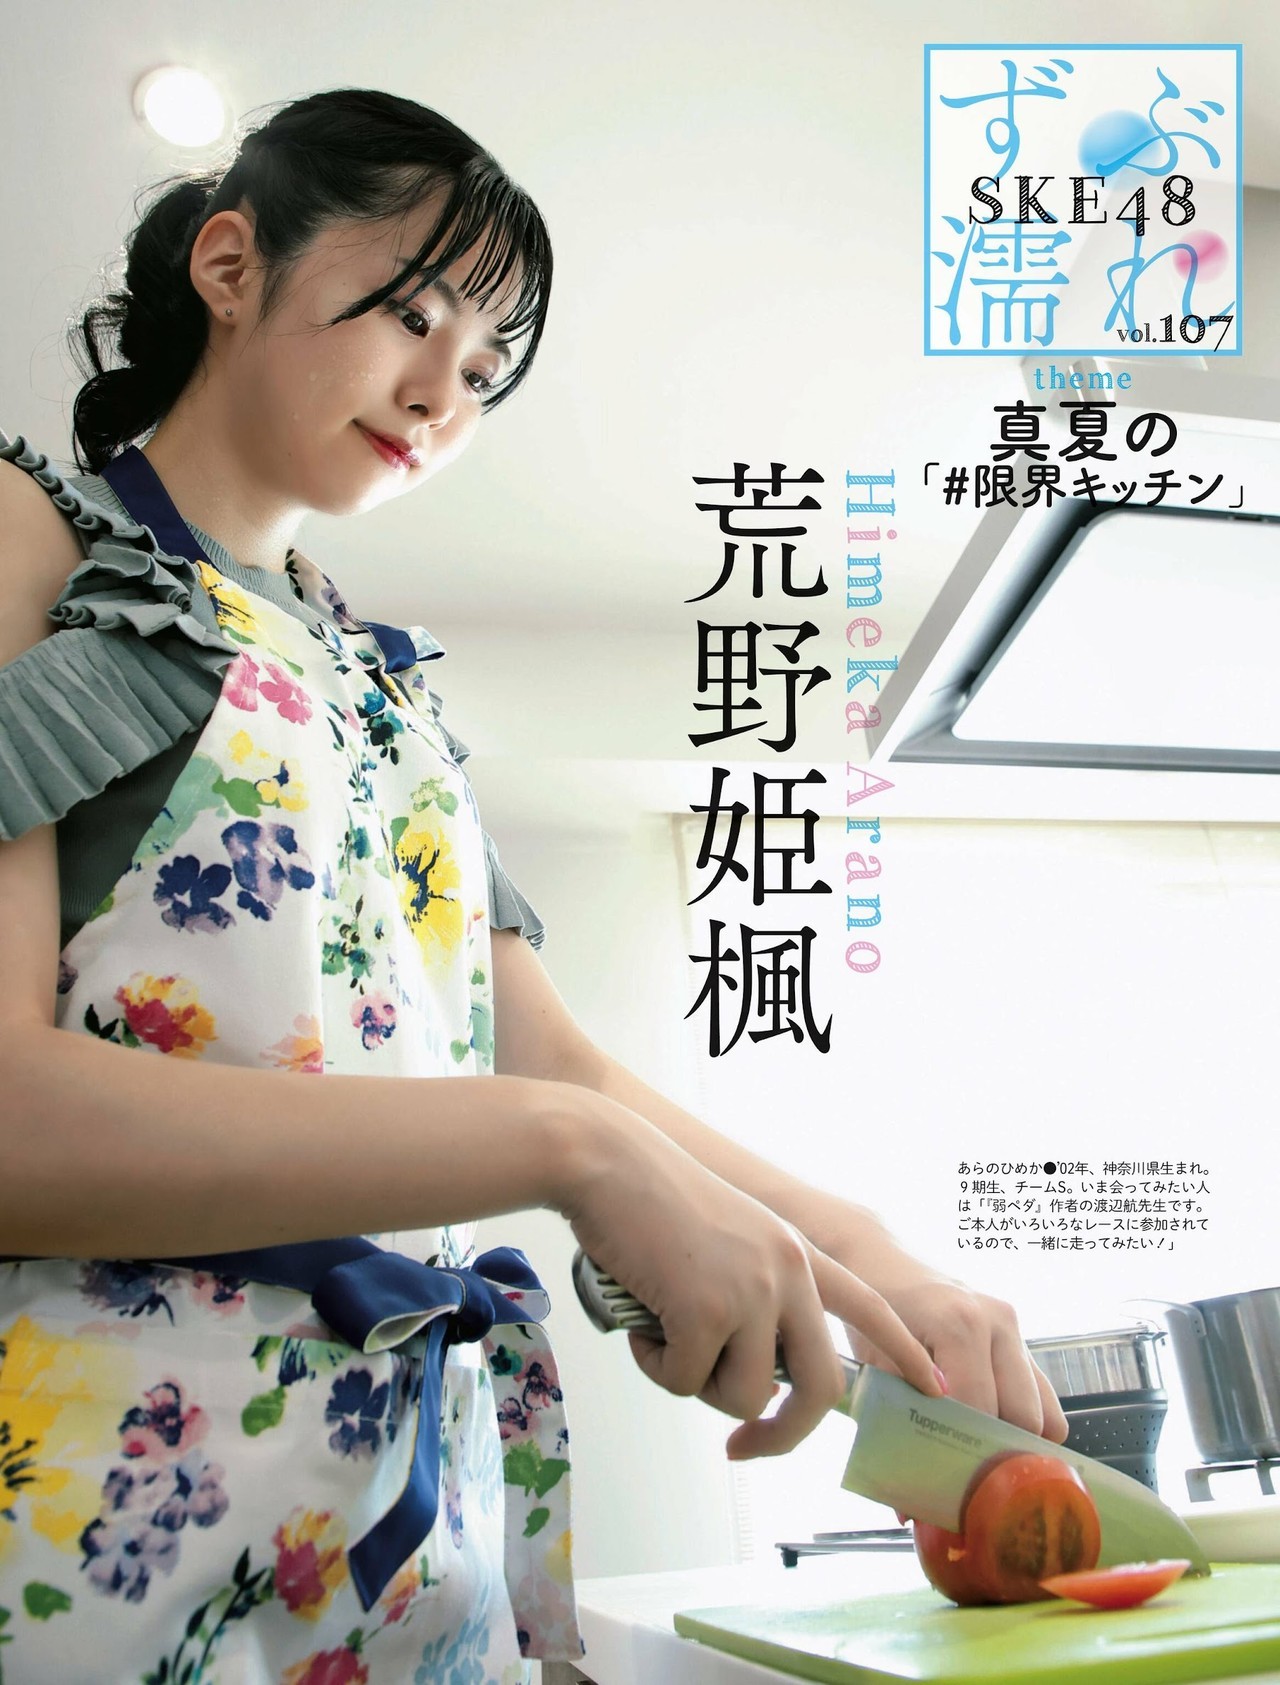 SKE48, Weekly SPA! 2022.08.16 (週刊SPA! 2022年8月16日号) - itotii